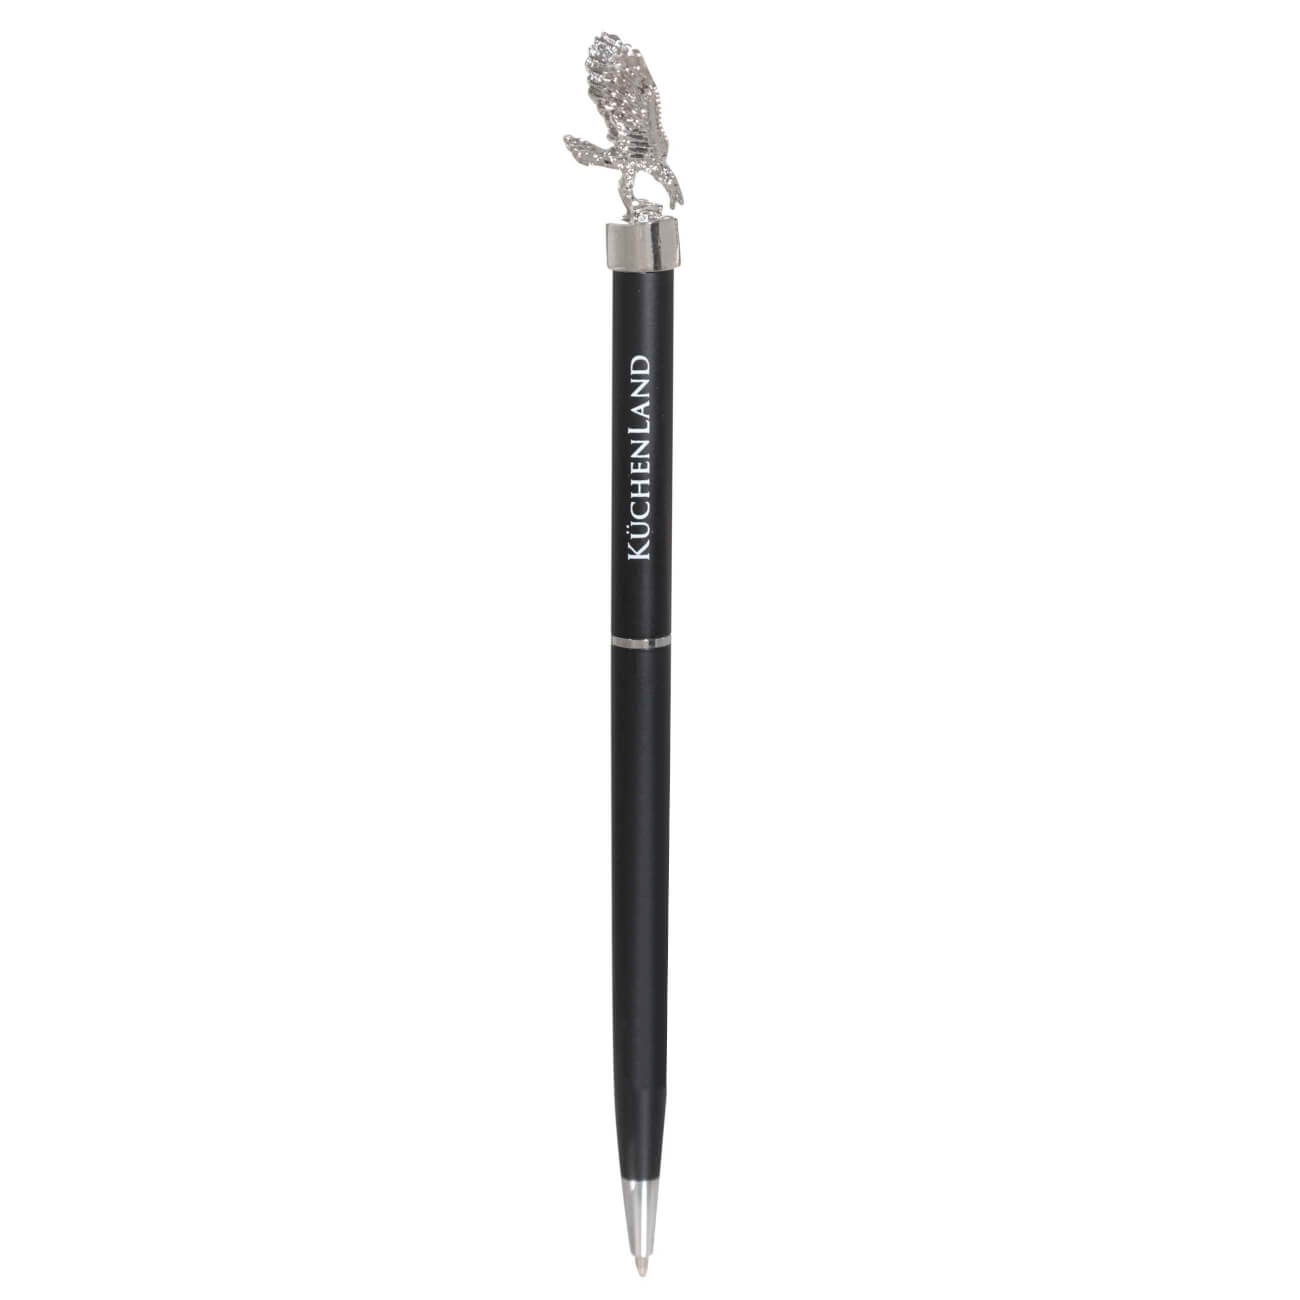 Ручка шариковая, 15 см, с фигуркой, сталь, черная, Орел, Draw figure ручка шариковая 15 см с фигуркой сталь черная орел draw figure